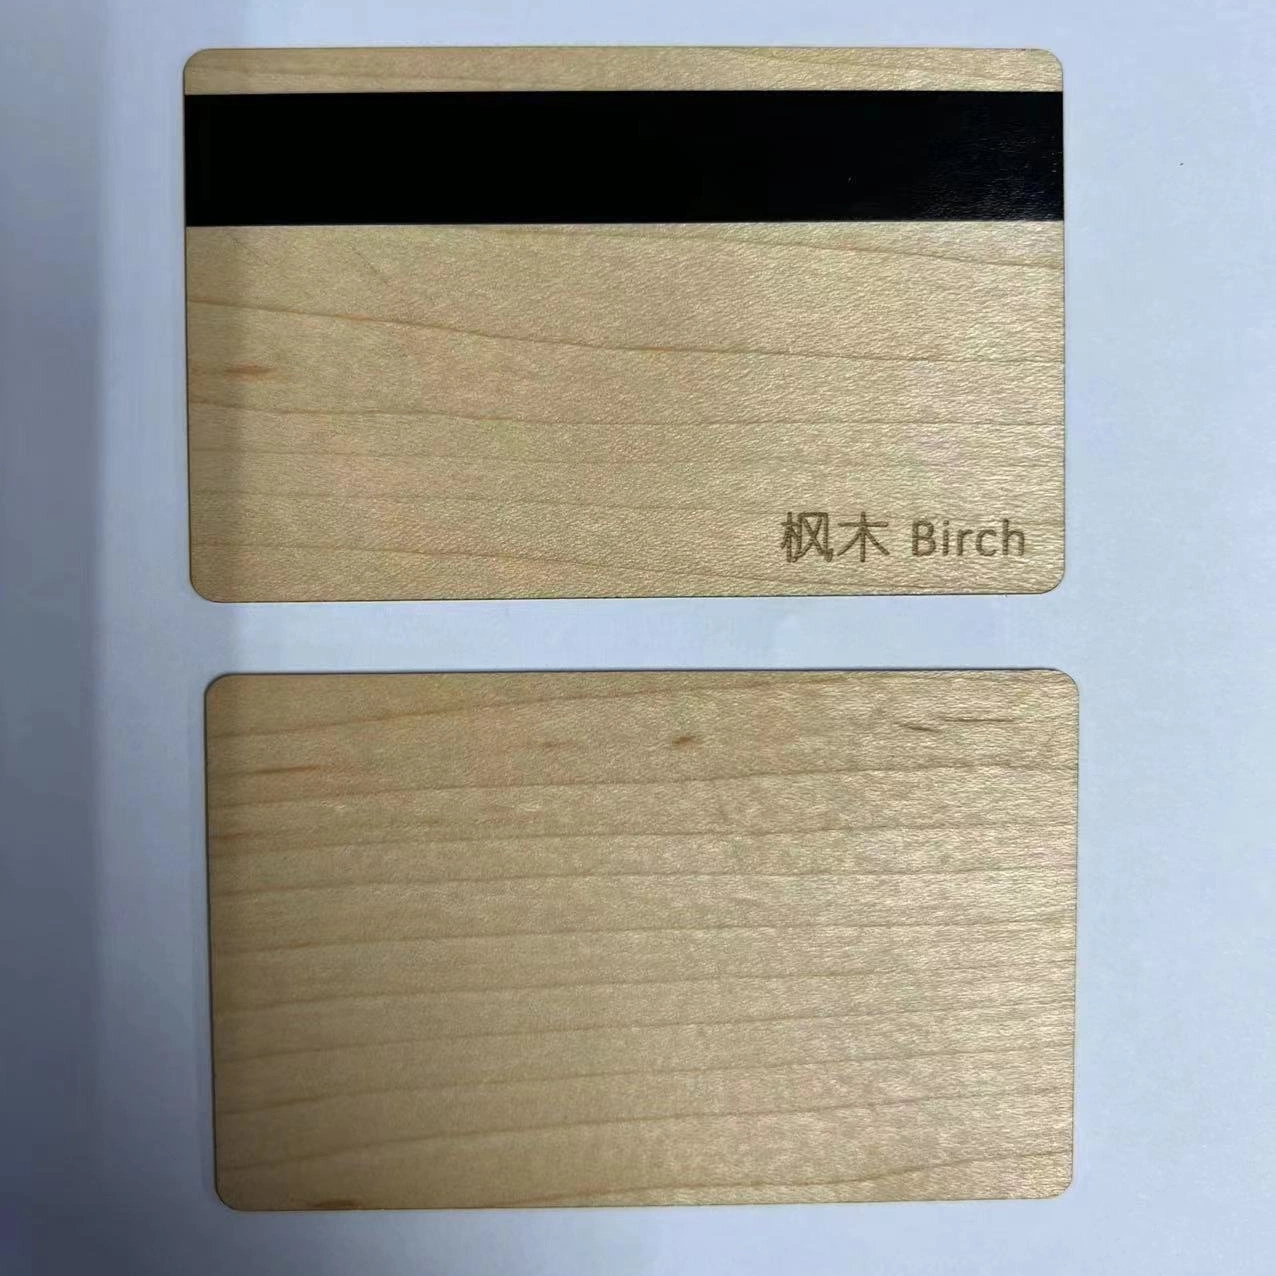 Una muestra gratis Business tarjeta virgen NFC Ntag 213 de la tarjeta de madera de bambú